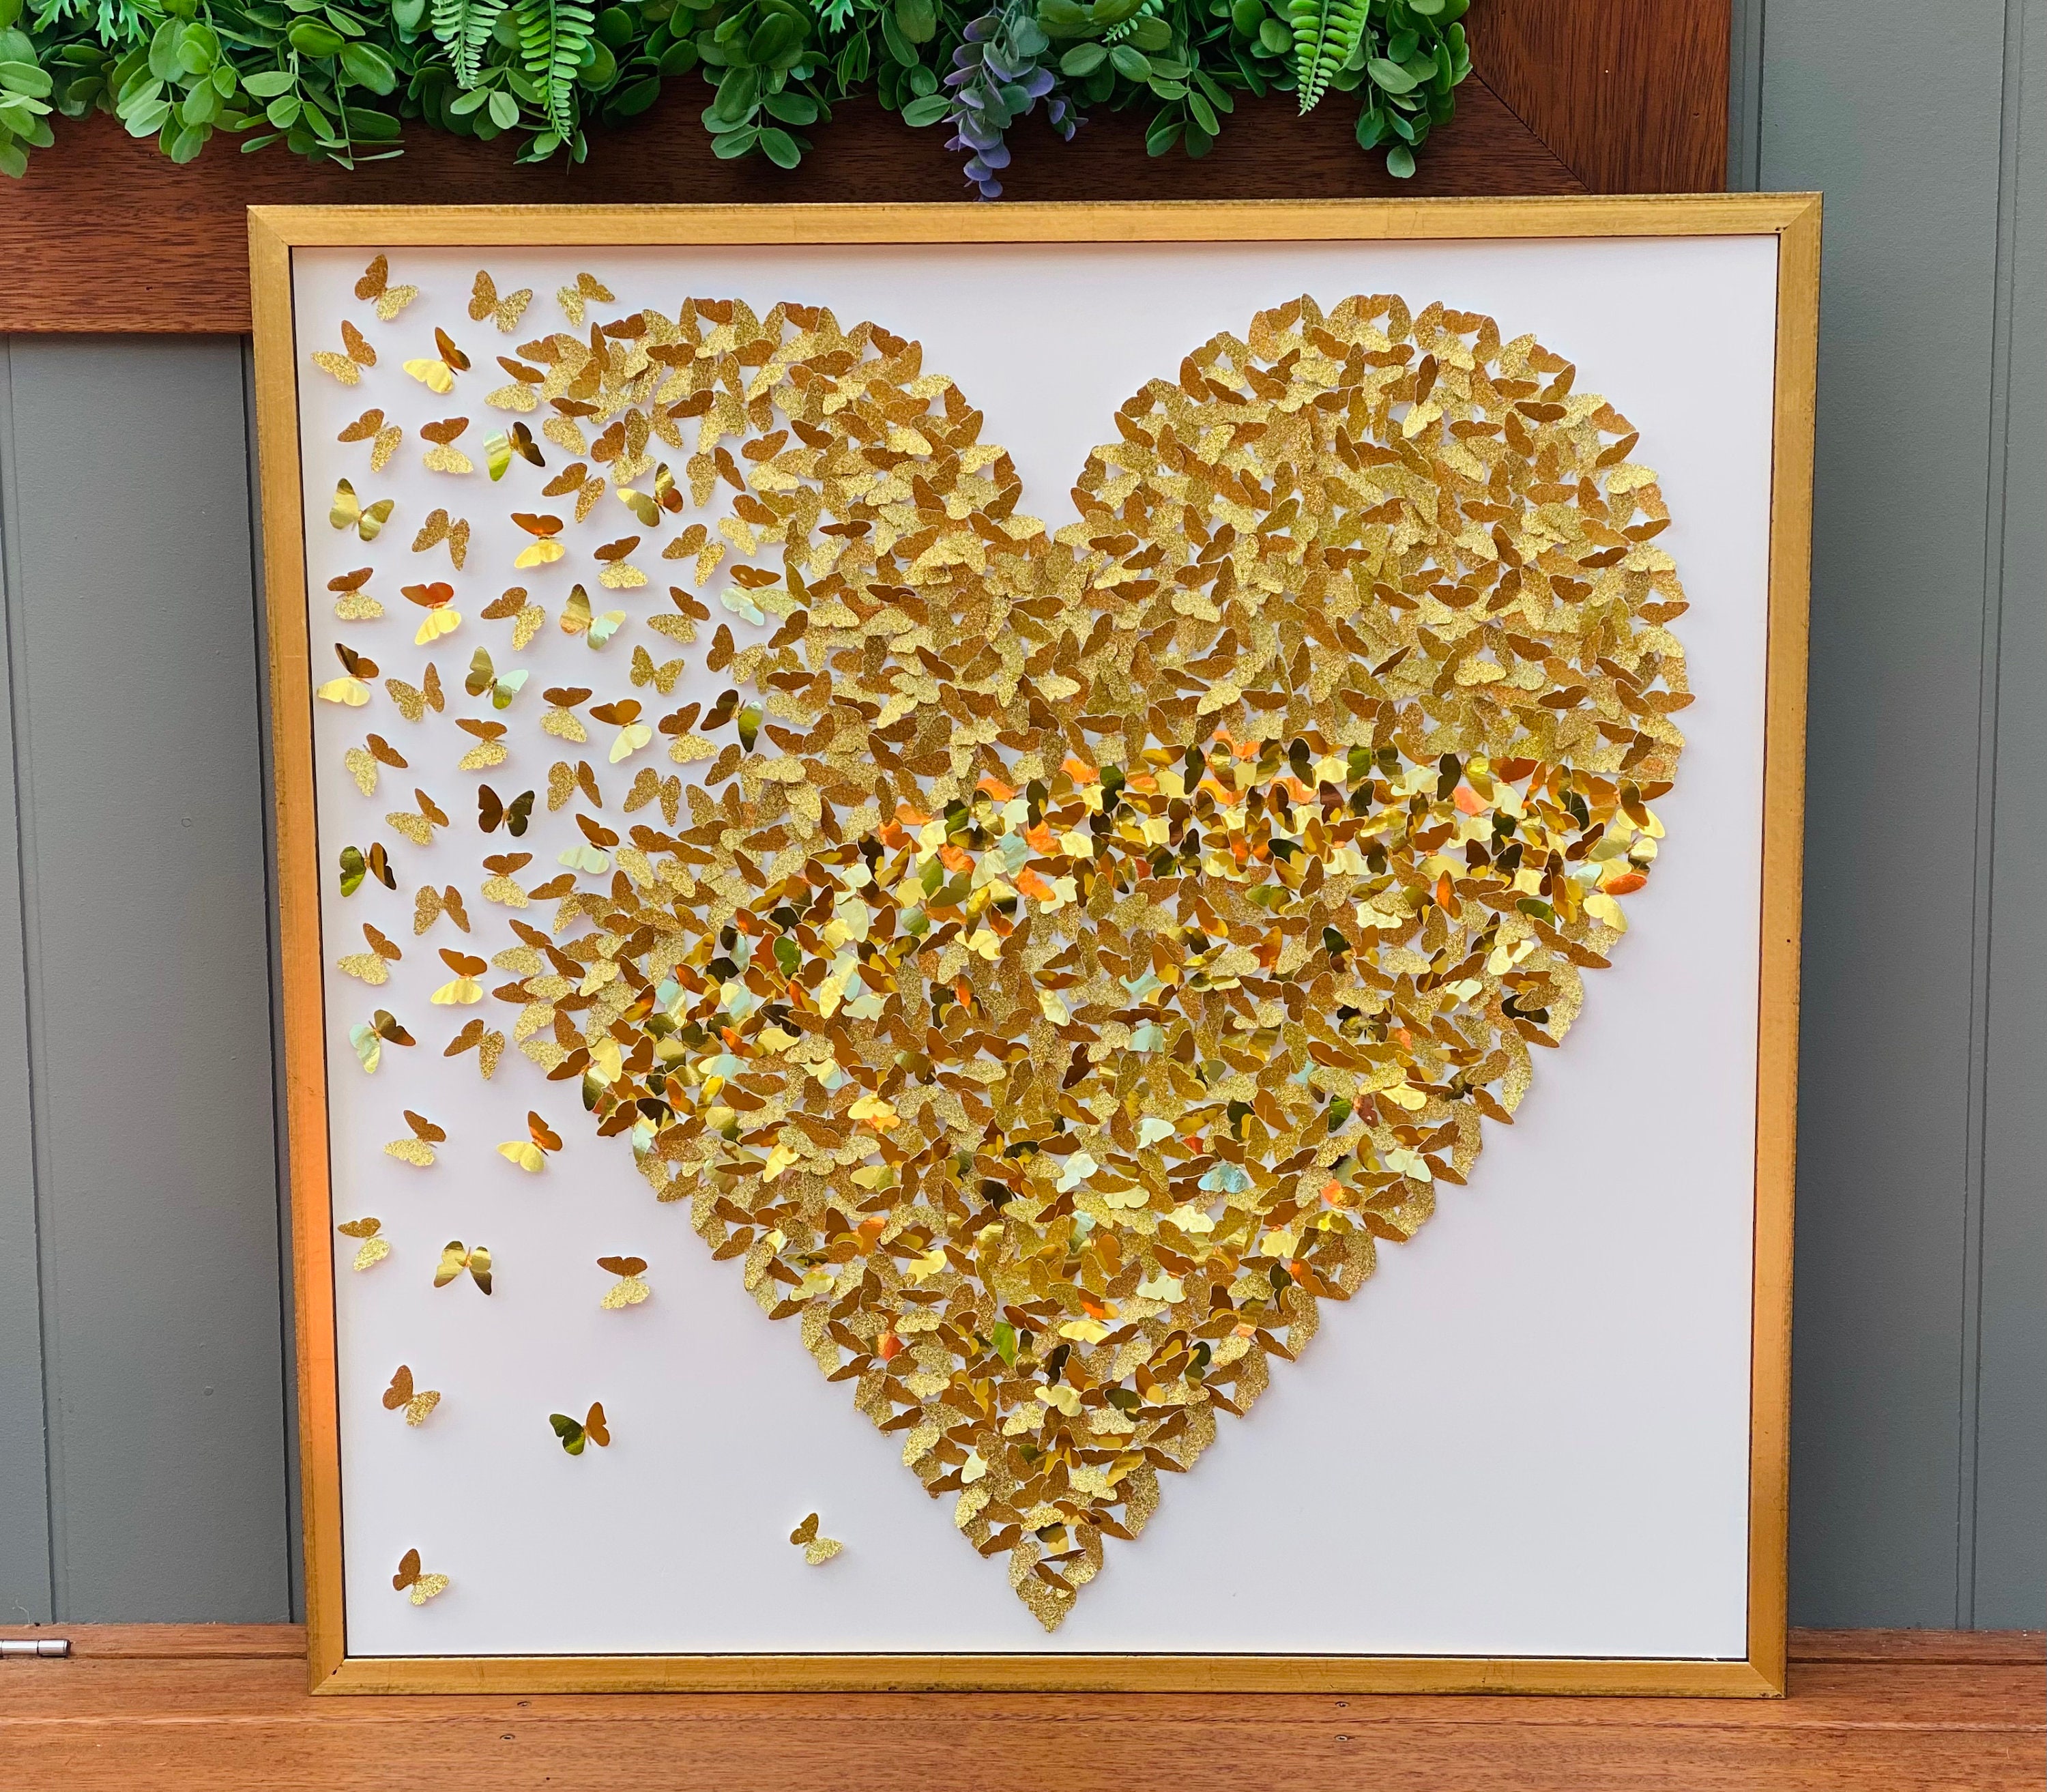 Gold Butterflies Splash Design Collage Wall Art Decor 